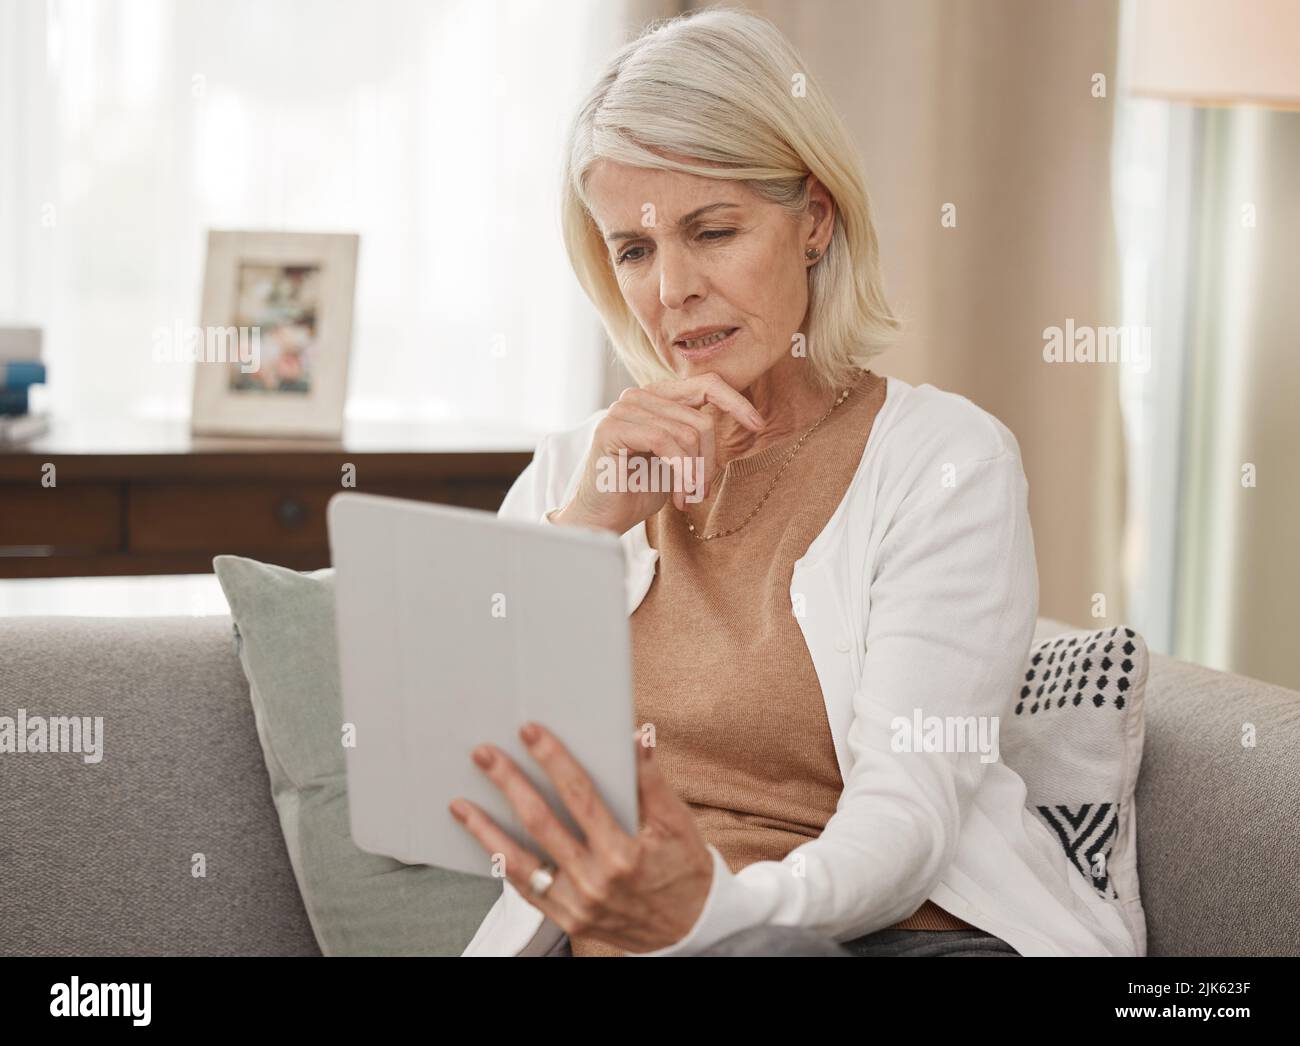 Wenn Sie nicht wissen, informieren Sie sich. Eine reife Frau mit einem digitalen Tablet und sieht besorgt zu Hause. Stockfoto